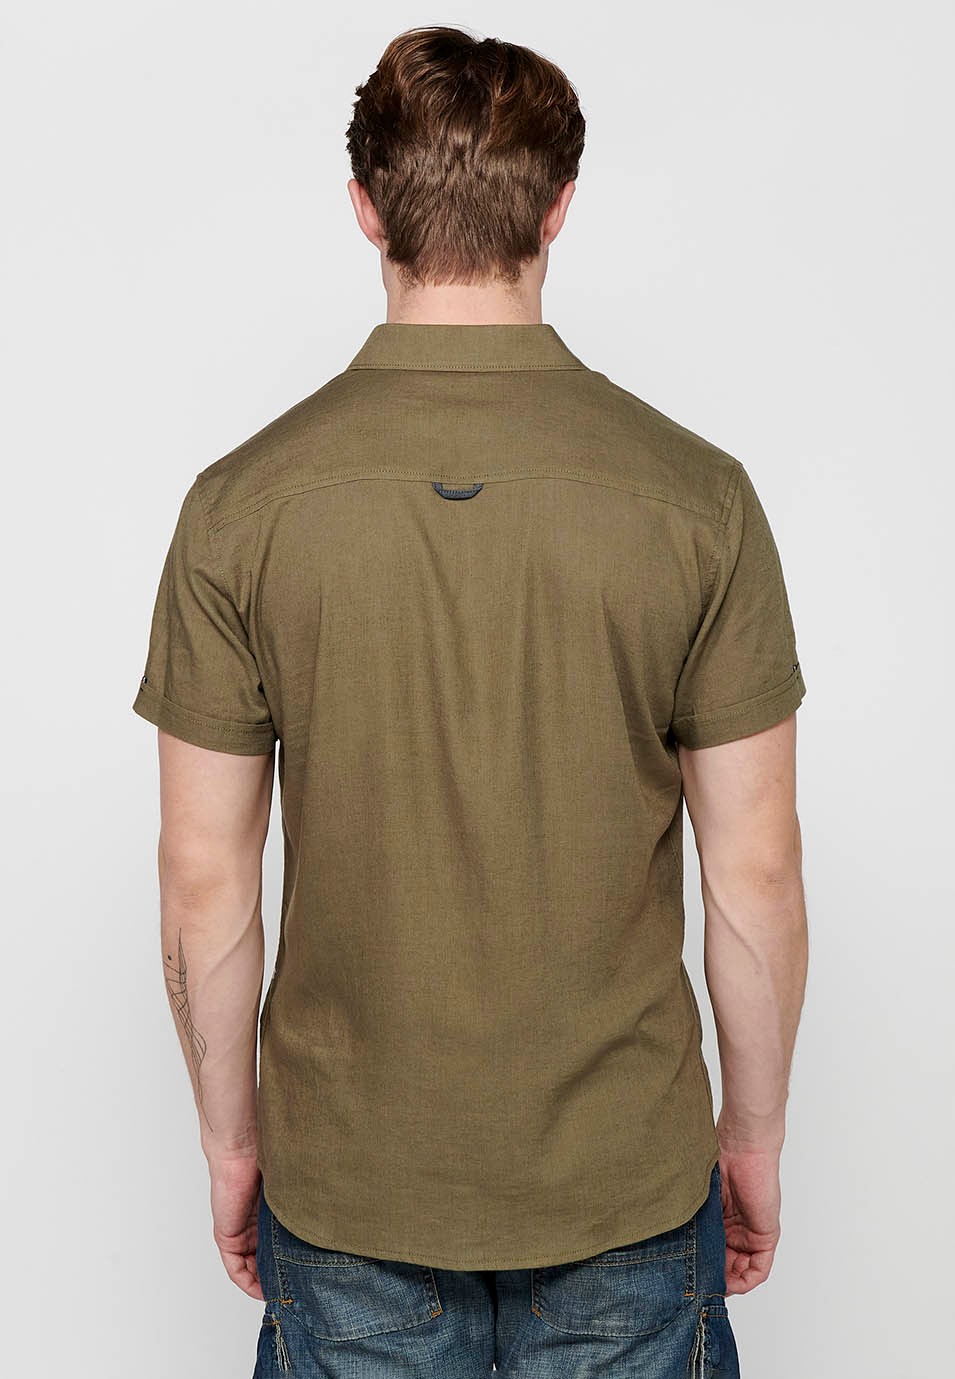 Short Sleeve Linen Shirt, khaki color, for men 4